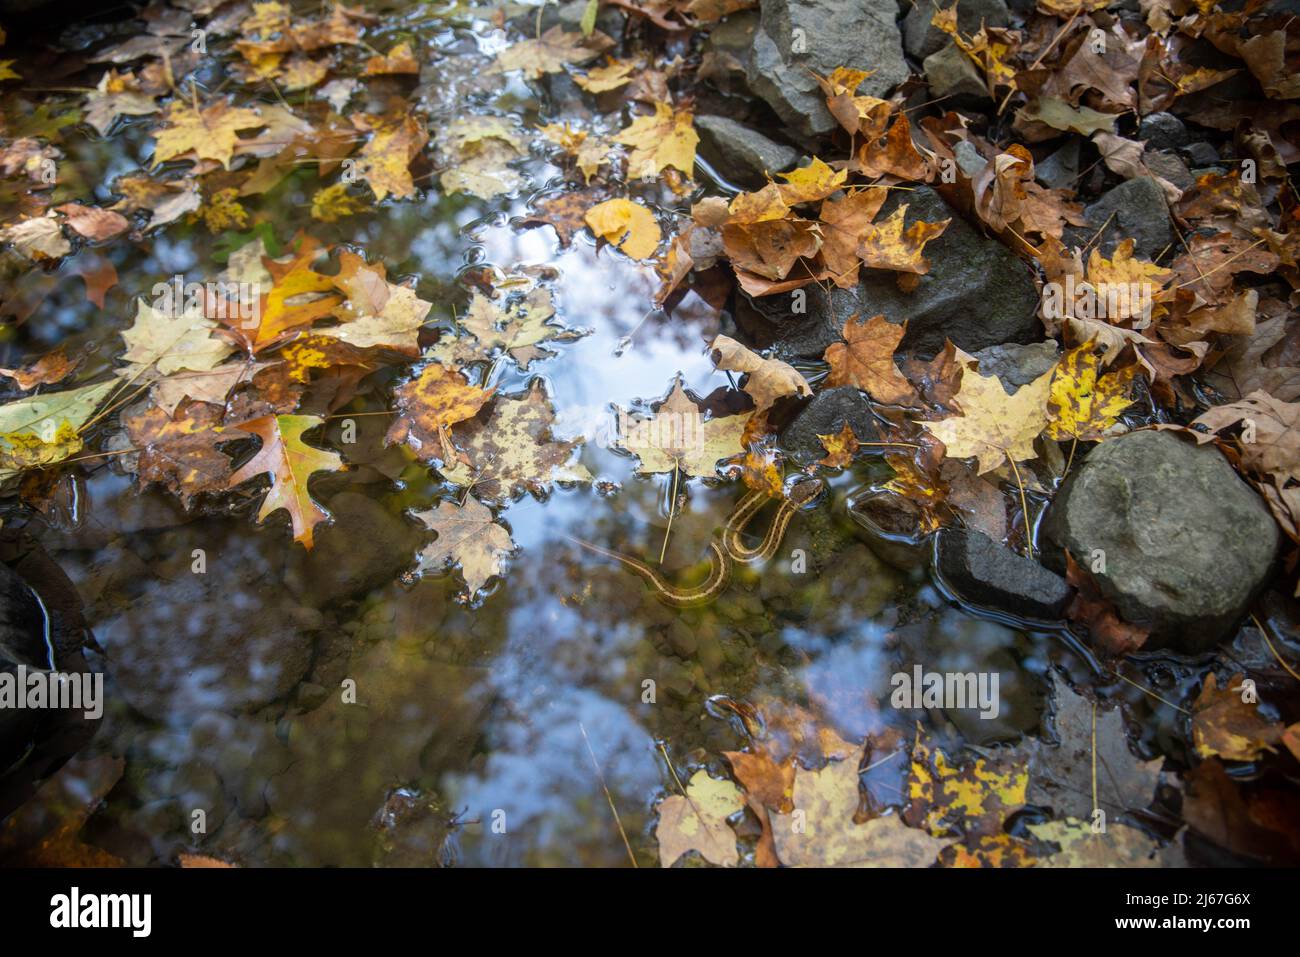 Serpent garter de Pennsylvanie thamnophis sirtalis dans un beau ruisseau forestier d'automne avec des feuilles jaune vif. Sa tête dépasse si l'eau. Beautif Banque D'Images